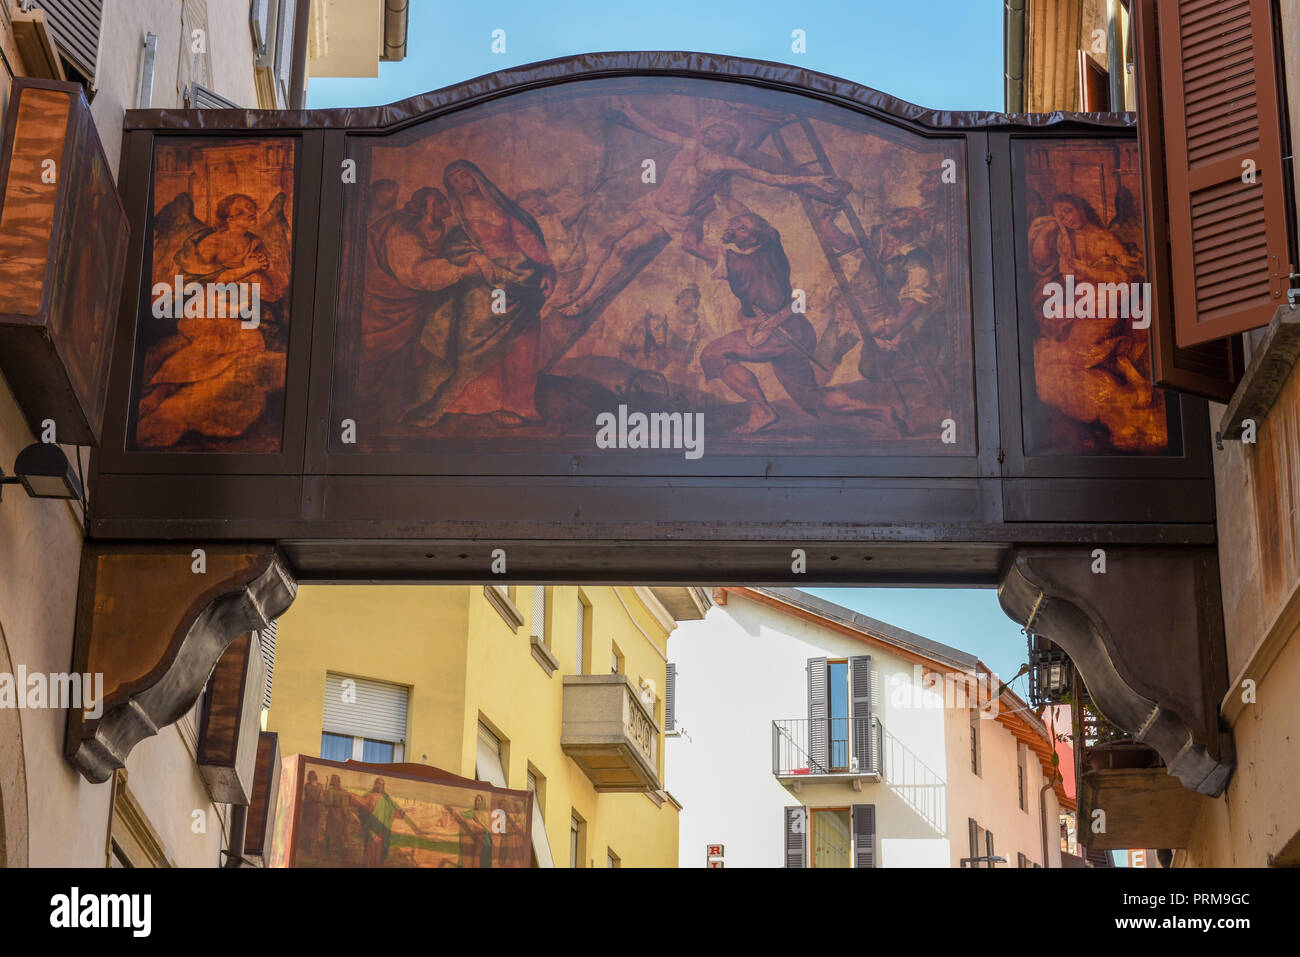 Mendrisio, Schweiz - 8 April 2017: Gemälde auf Leinwand beleuchtete Szenen aus der Passion Christi in Mendrisio in der Schweiz Stockfoto